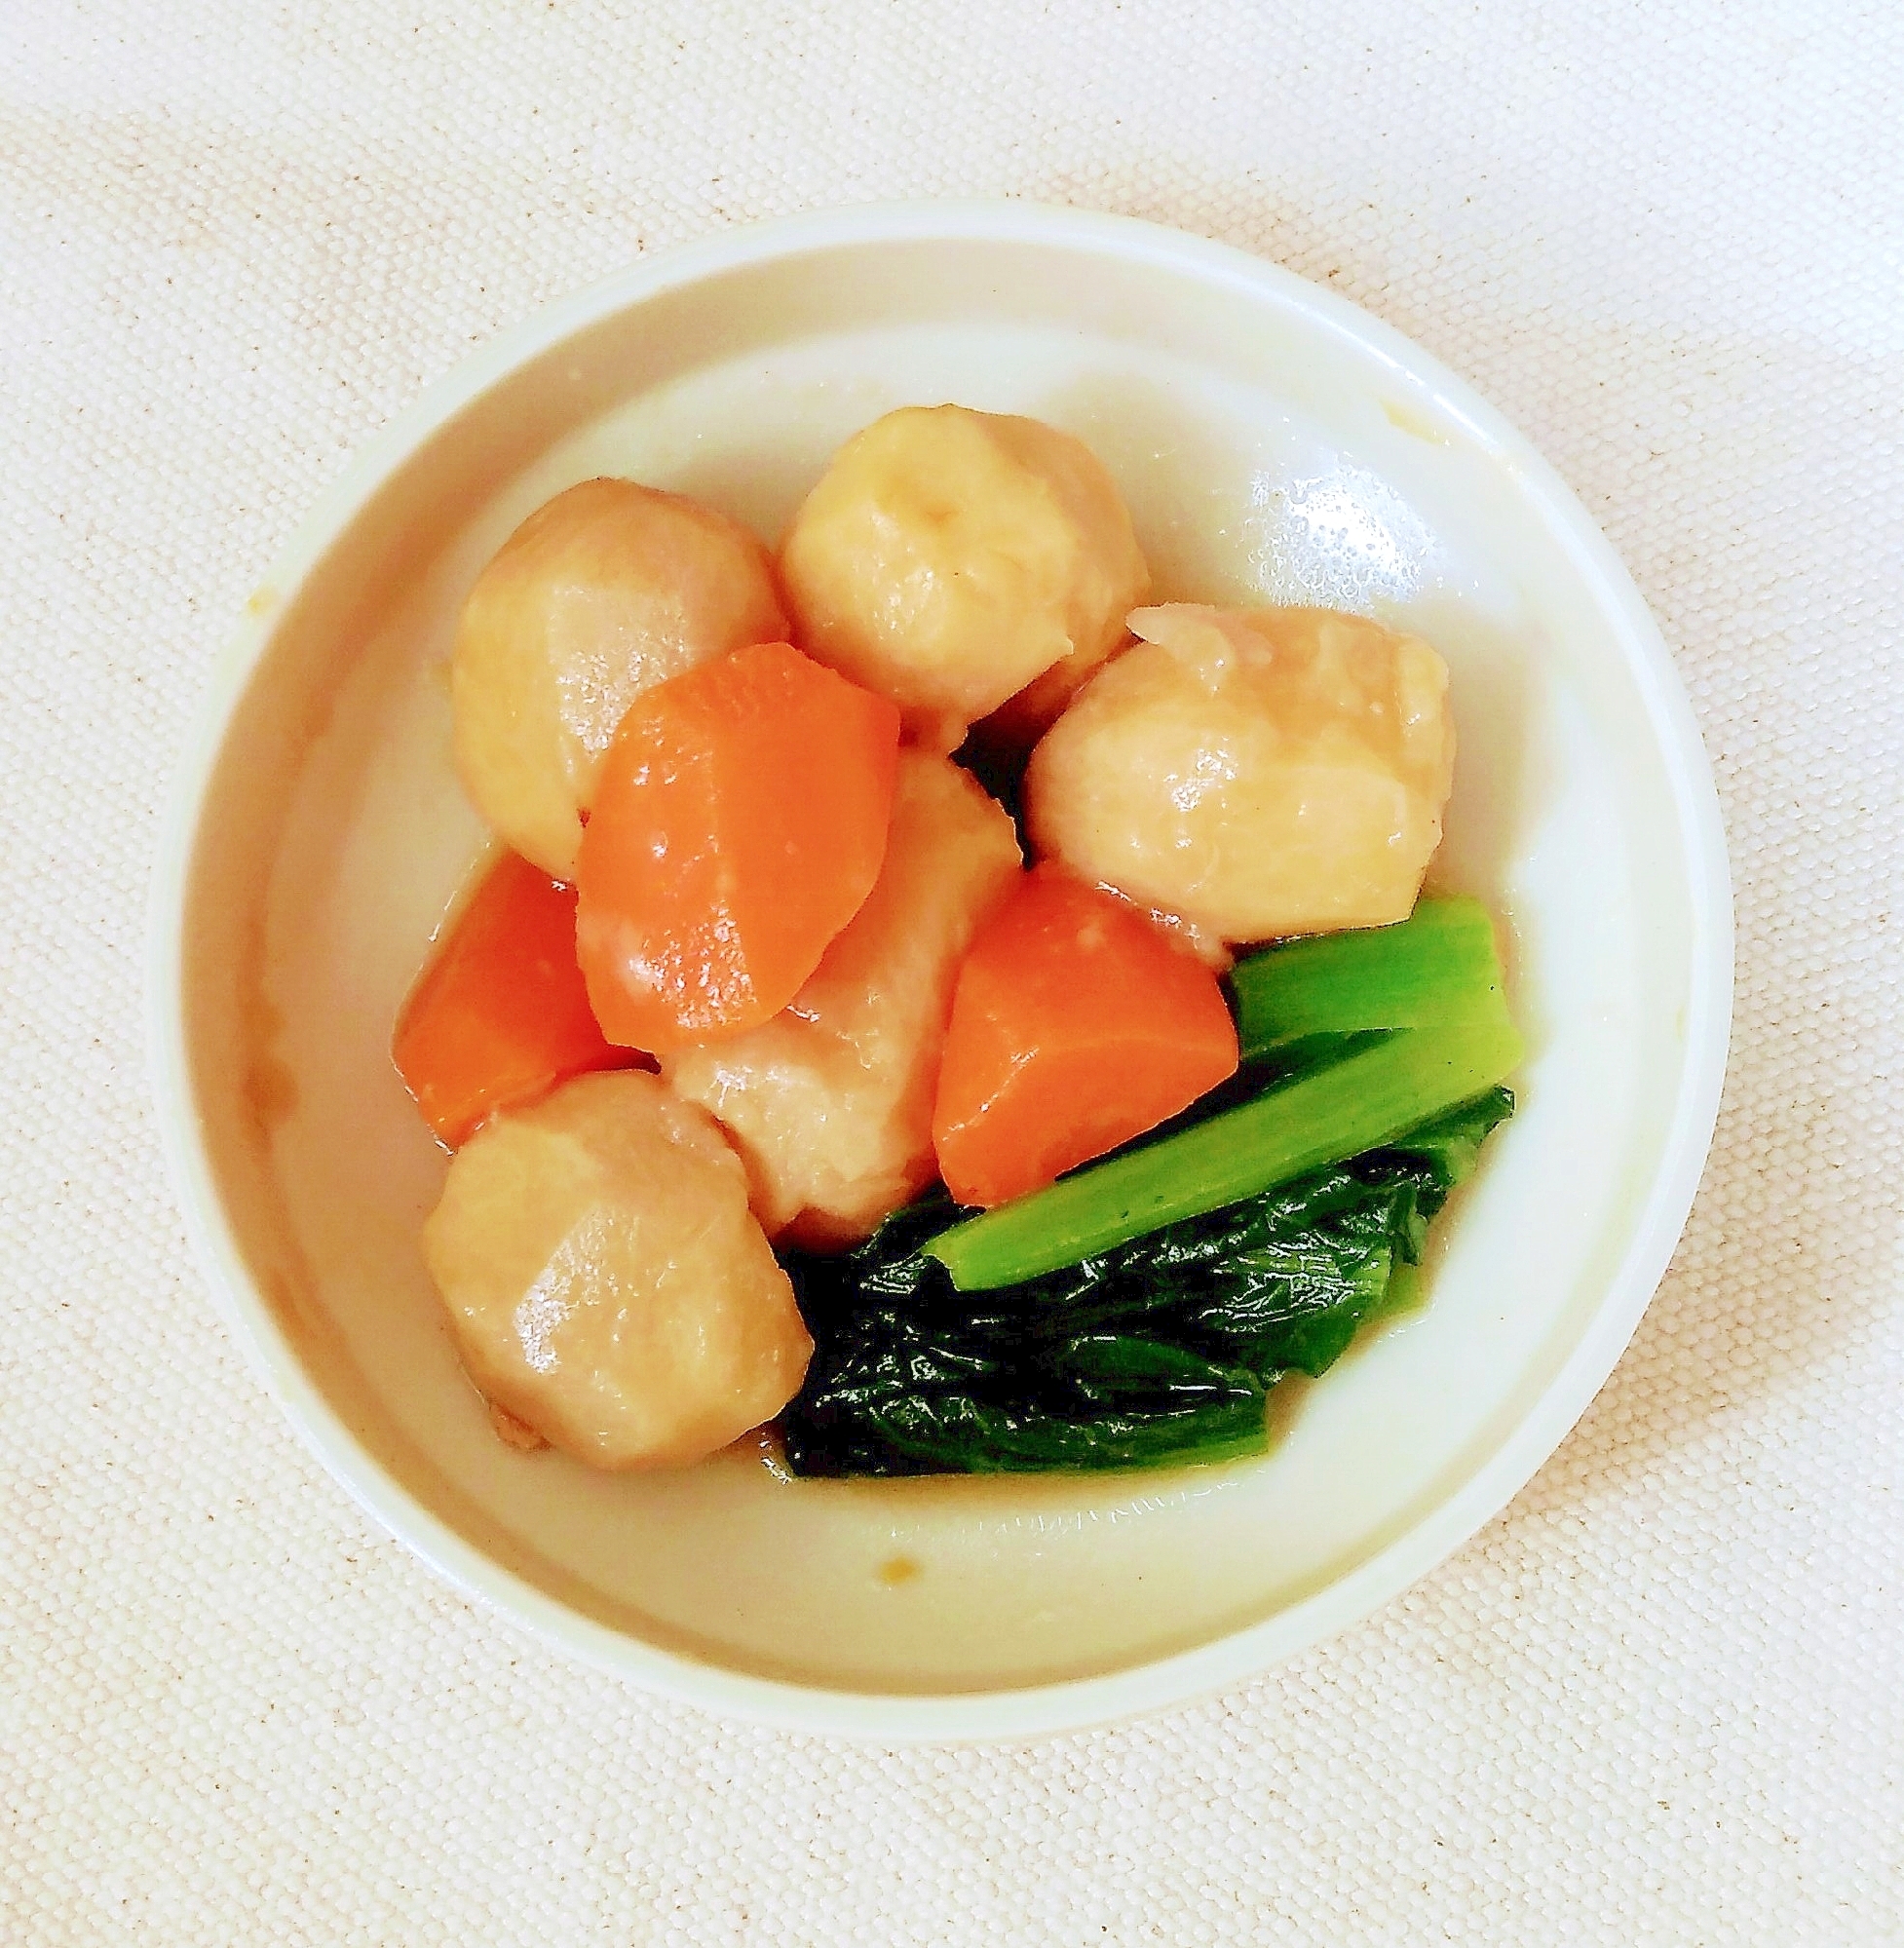 里芋と小松菜の煮物